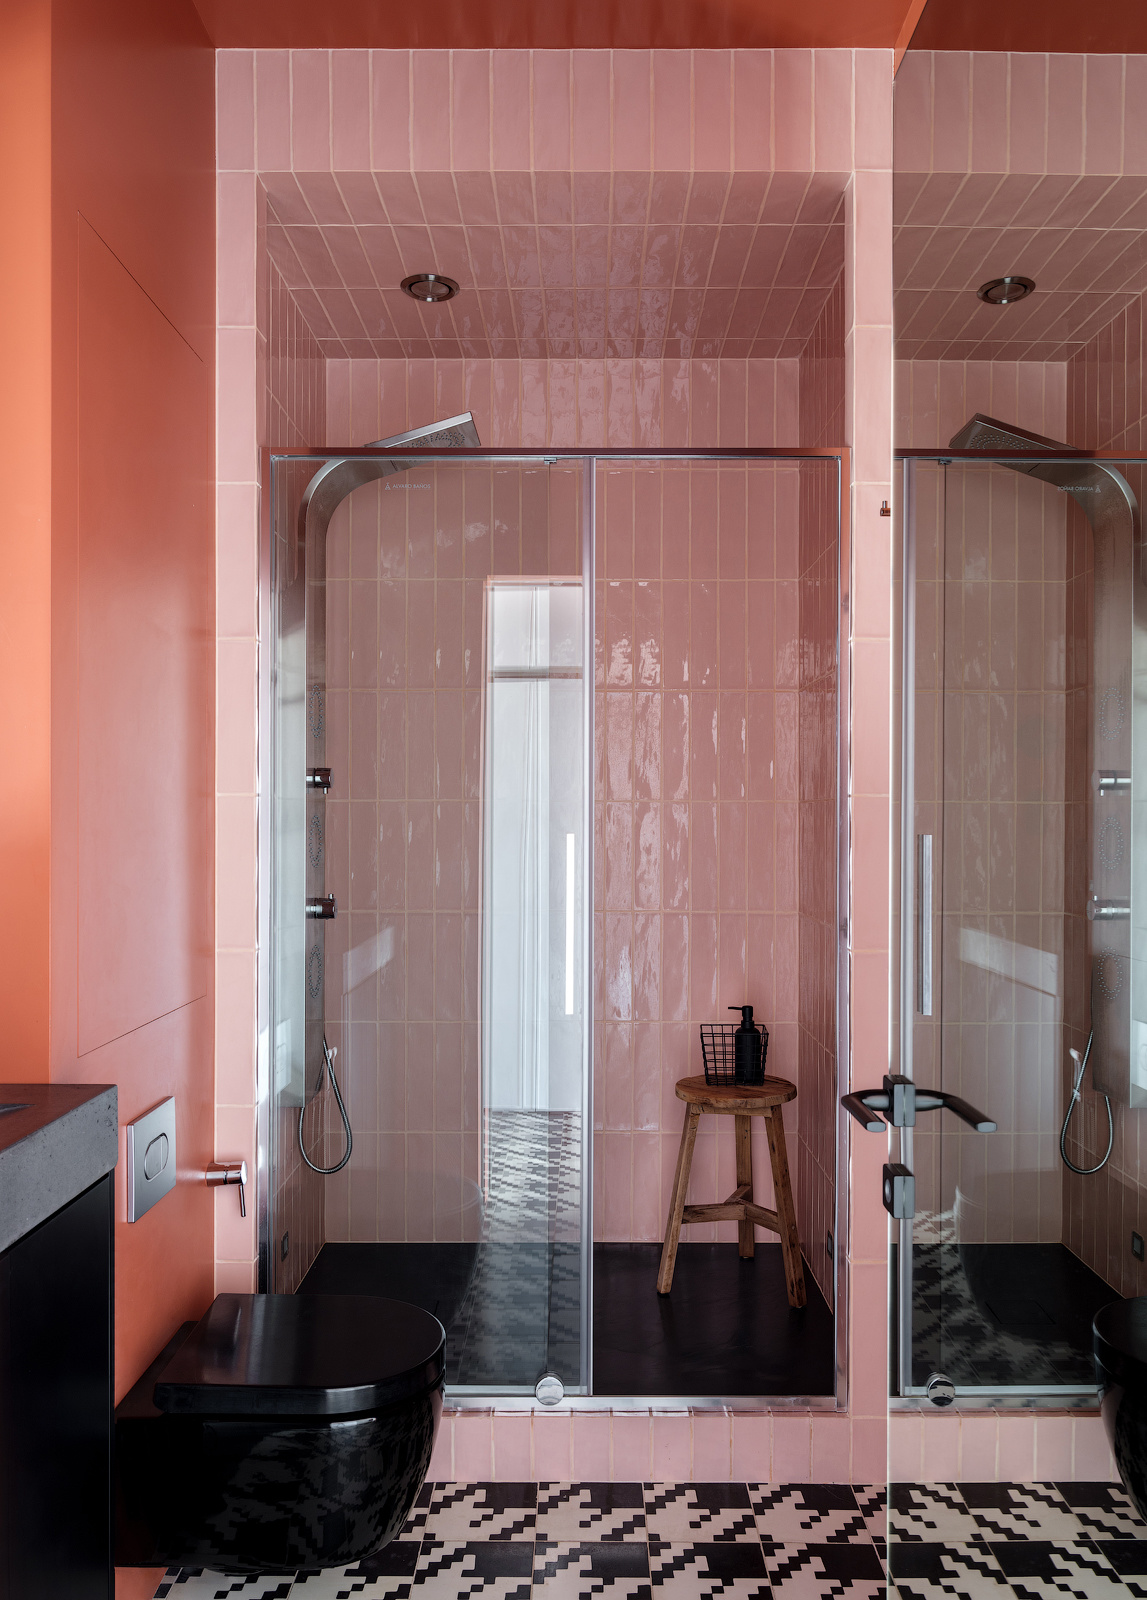 Phòng tắm ấn tượng với sàn nhà lát gạch tương tự hành lang lối vào. Những viên gạch màu hồng ốp dọc tường tạo cảm giác trần nhà cao hơn thực tế. Ngoài ra, độ bóng của gạch kết hợp cửa kính và bức tường gương cho không gian nhỏ rộng thoáng hơn.